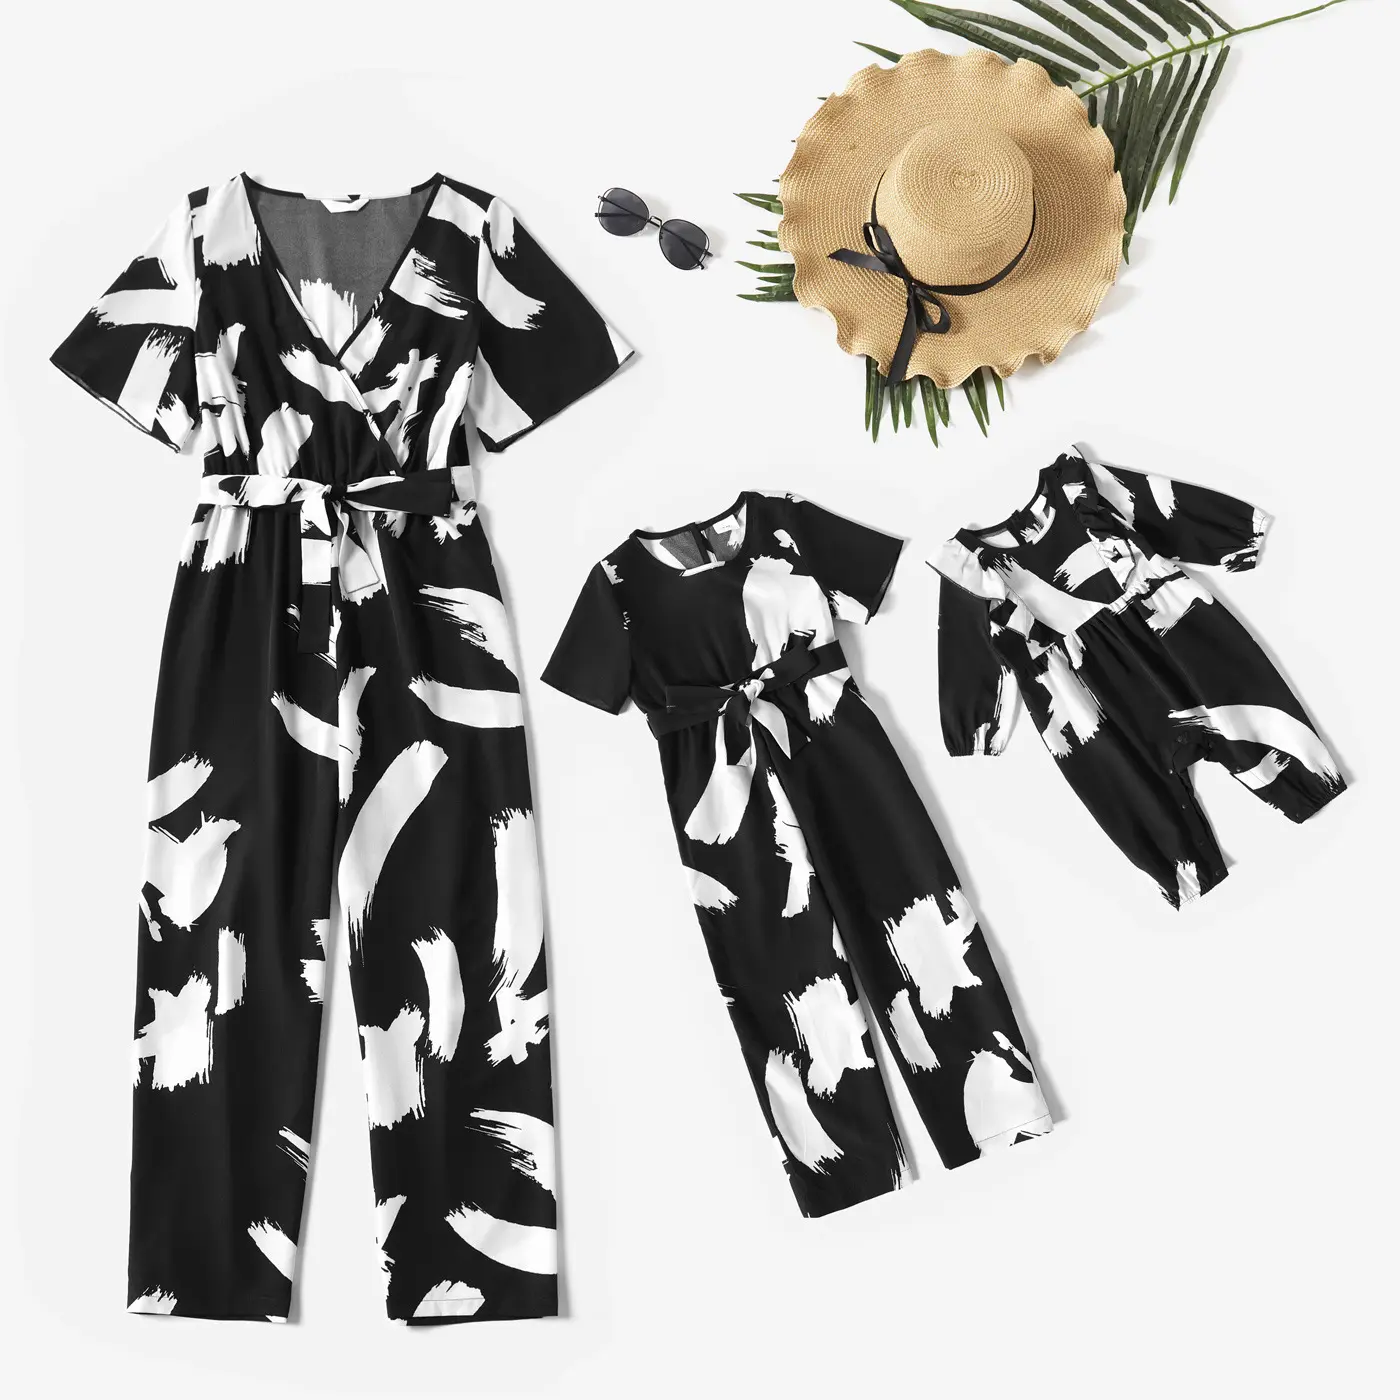 Одежда для мамы и дочери, комбинезоны черного и белого цвета с абстрактным граффити и изображением семьи